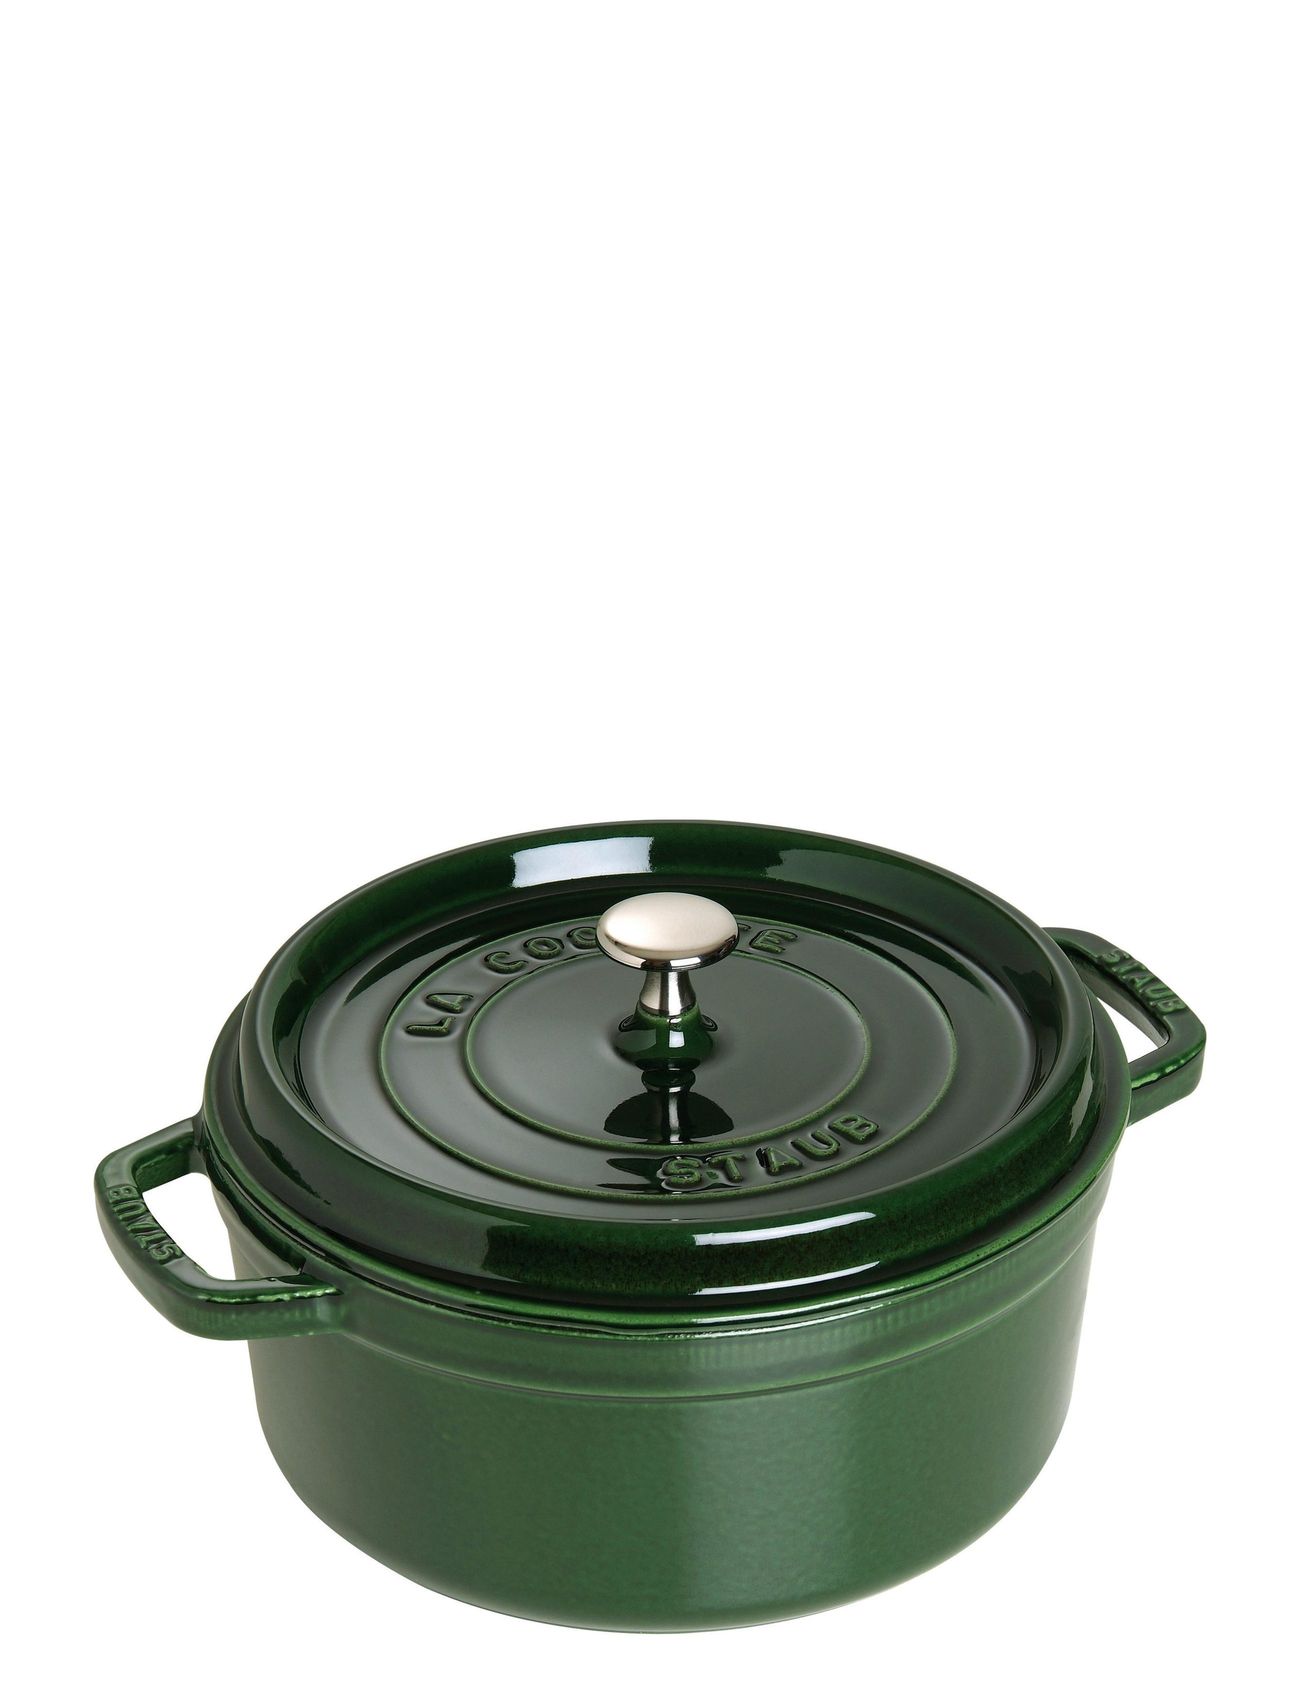 La Cocotte - Round Cast Iron, 3 Layer Enamel Home Kitchen Pots & Pans Casserole Dishes Green STAUB